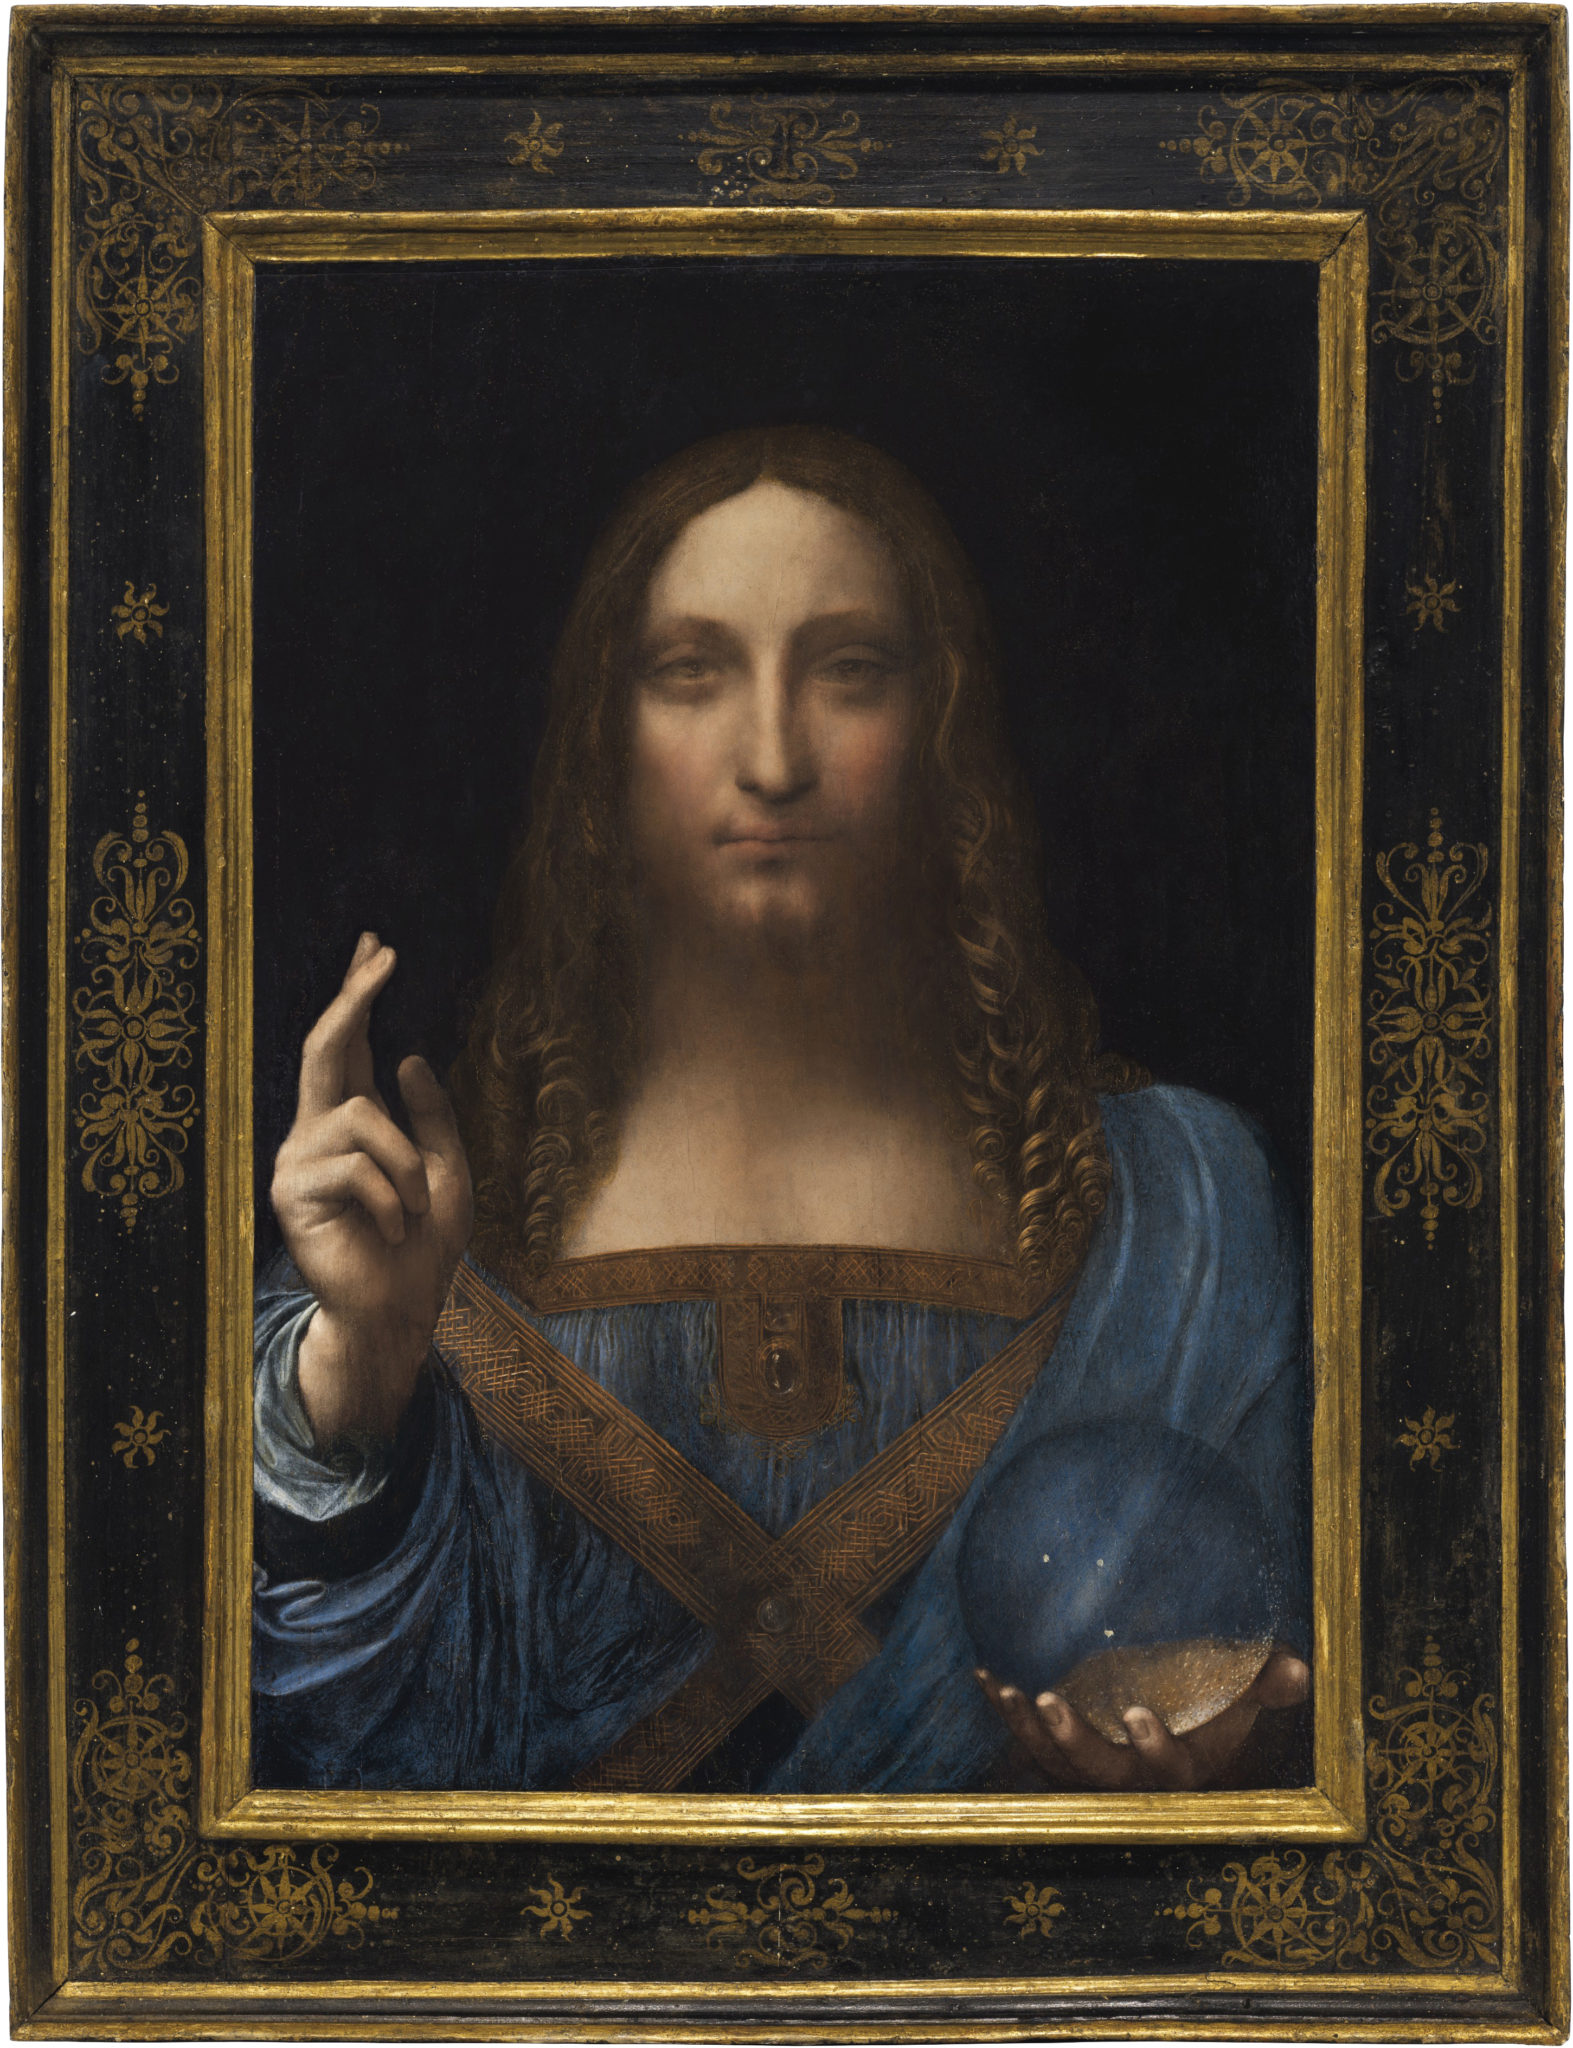 Լեոնարդո դա Վինչիի «Salvator Mundi»-ն, բոլոր ժամանակների ամենաթանկ կտավը. լոմբարդային նպատակների համար կերպարվեստը գնահատելու և գնահատելու պատկեր